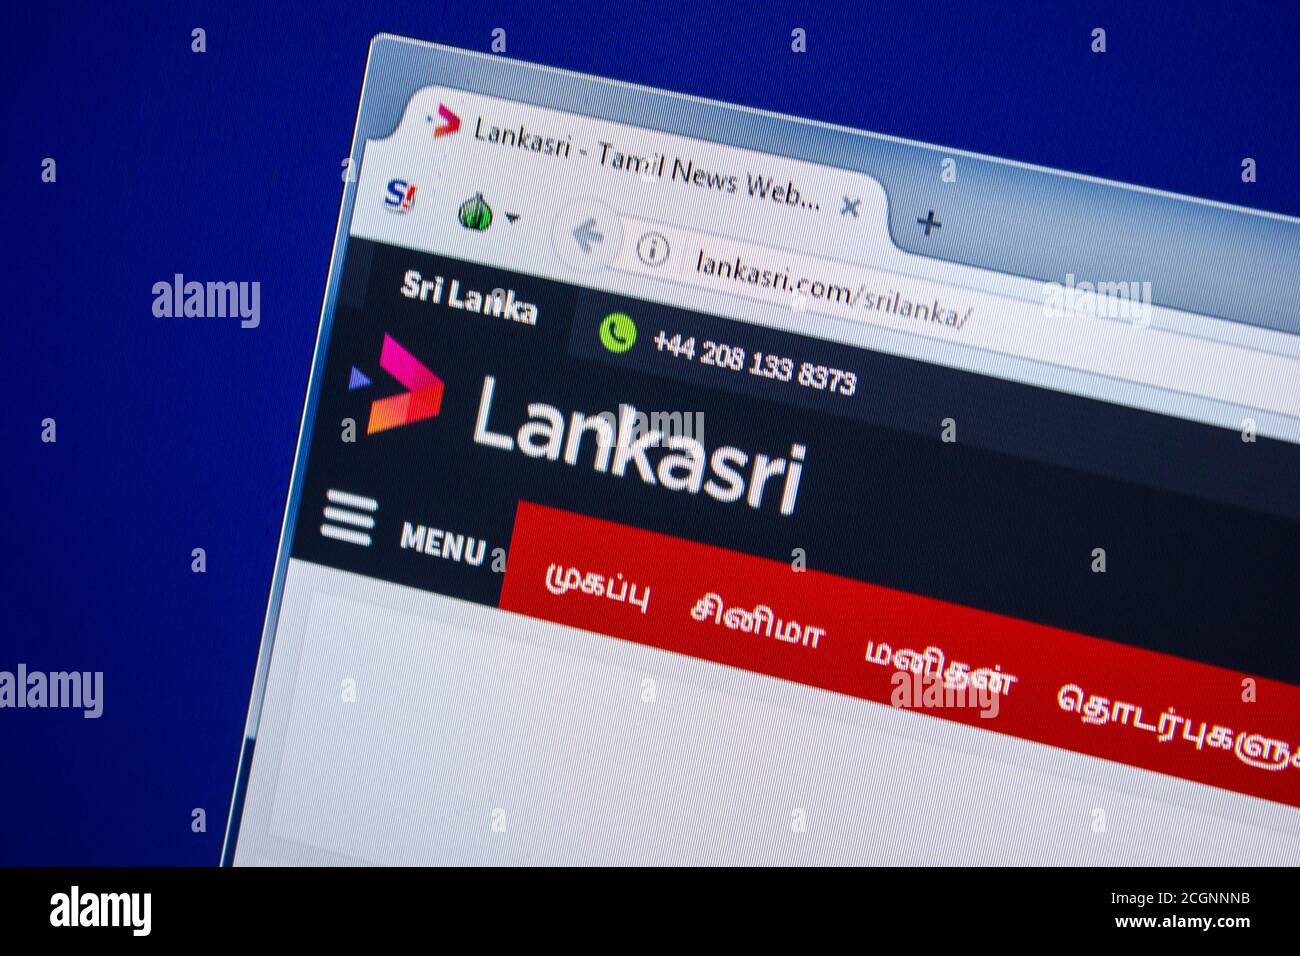 Lankasri tamil news